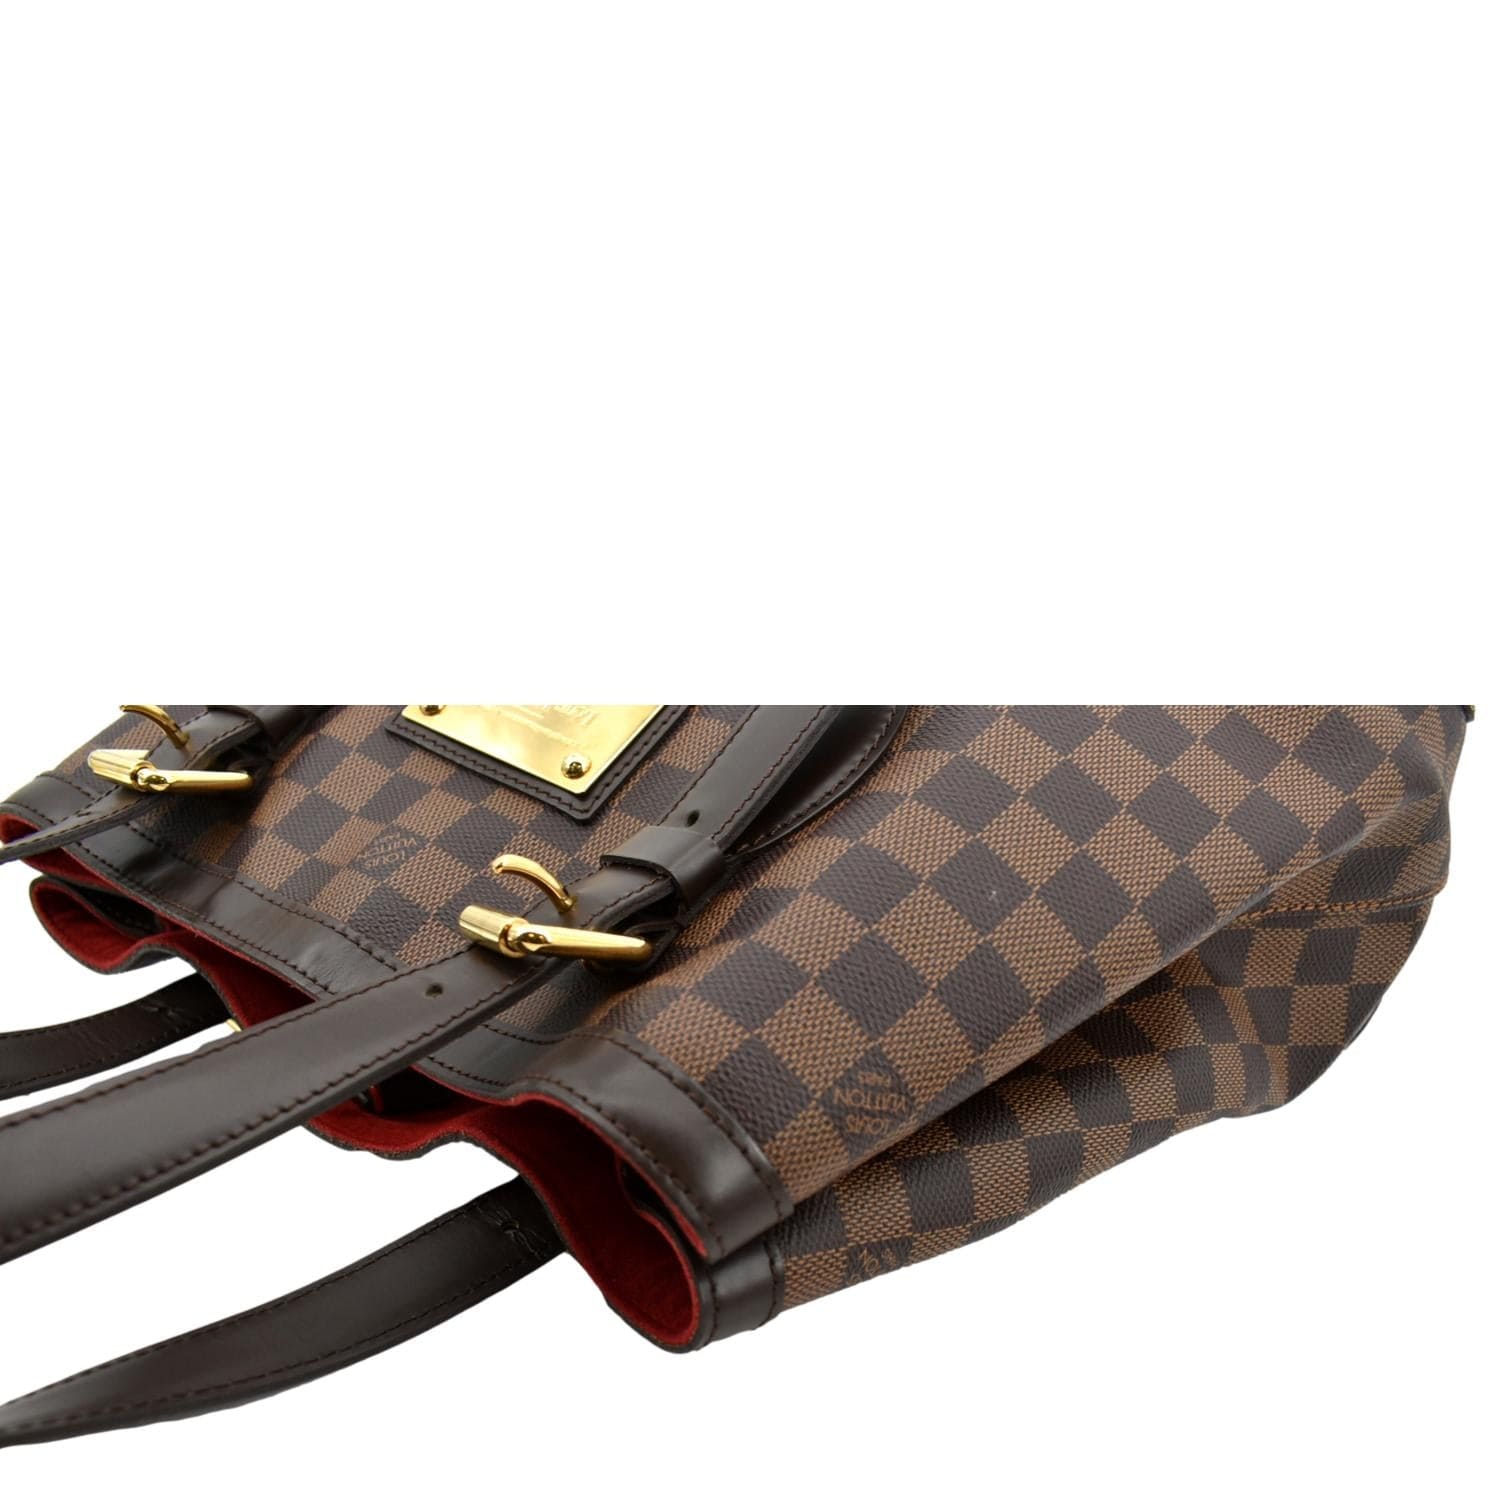 Louis Vuitton Hampstead PM Damier Ebene Shoulder Bag